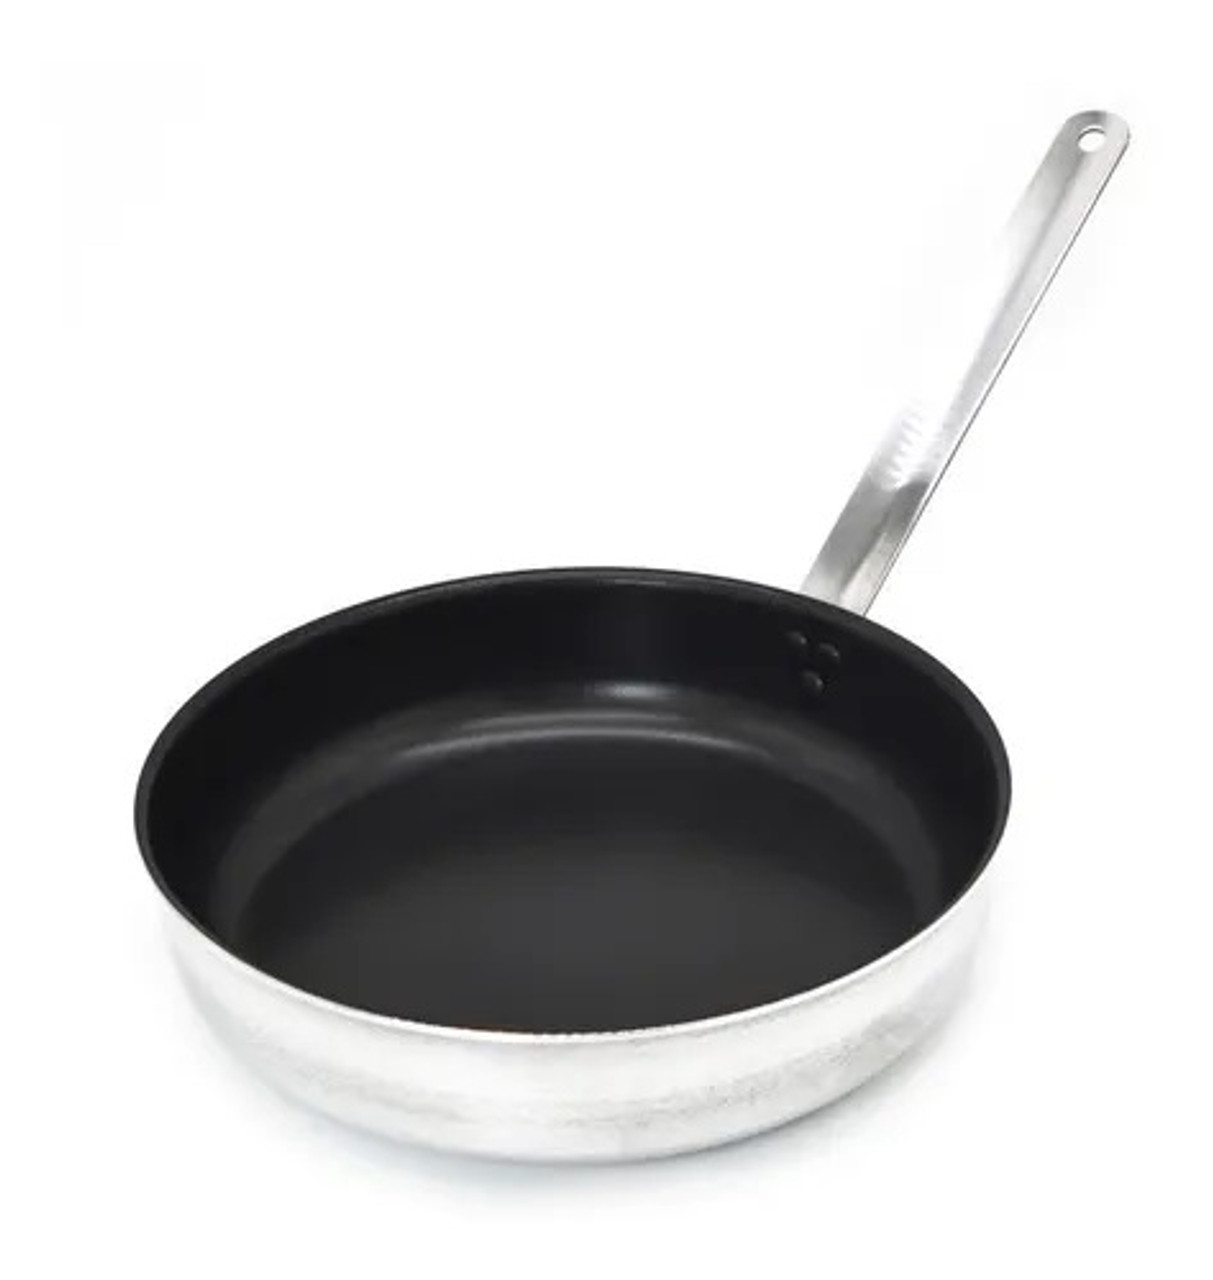 Wok Sartén Profesional Antiadherente Reforzado Professional Non-Stick Wok  Stir Fry Pan, 30 cm / 11.8